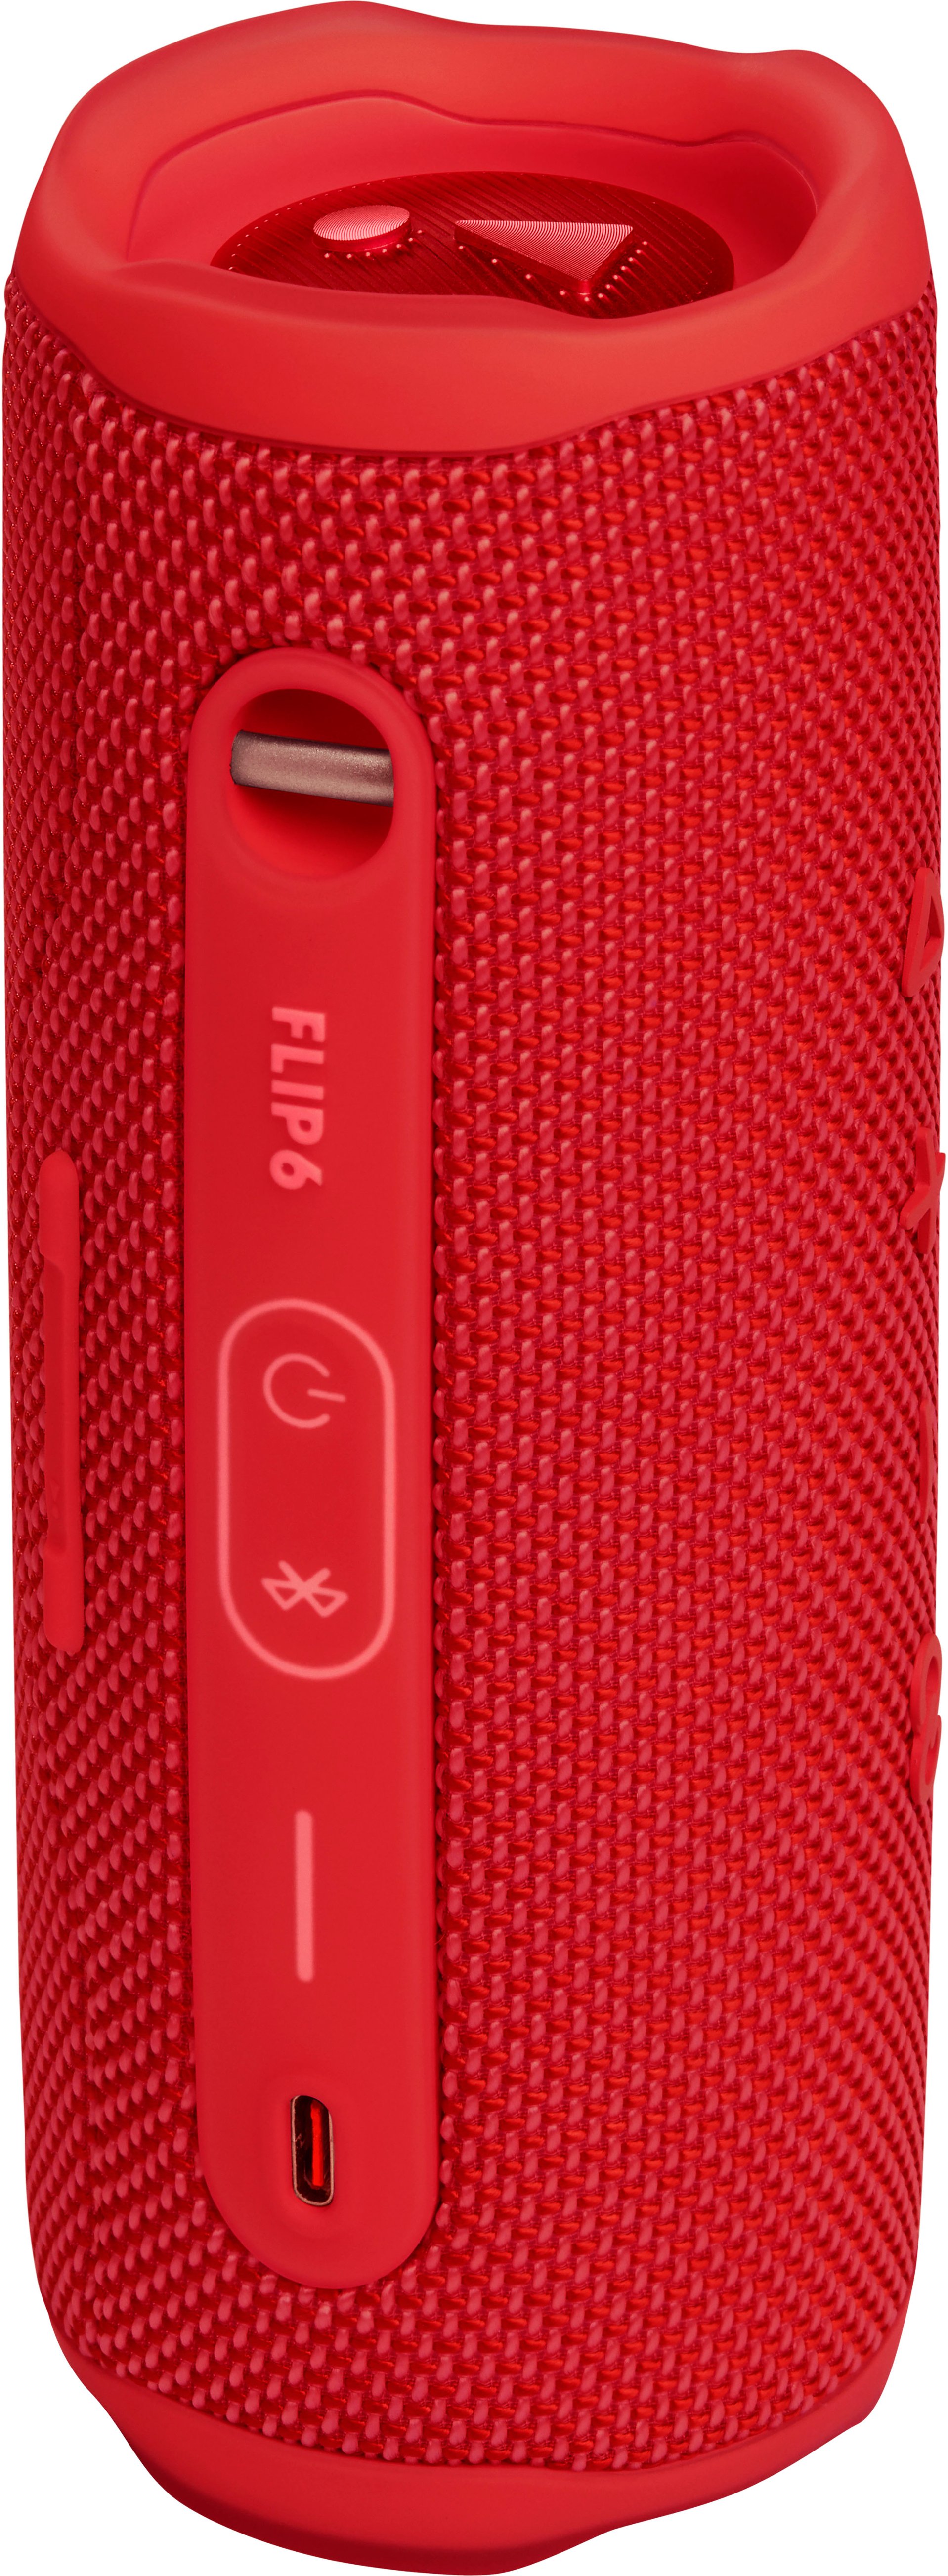 JBL FLIP6 Speaker Best Buy JBLFLIP6REDAM Waterproof Portable - Red